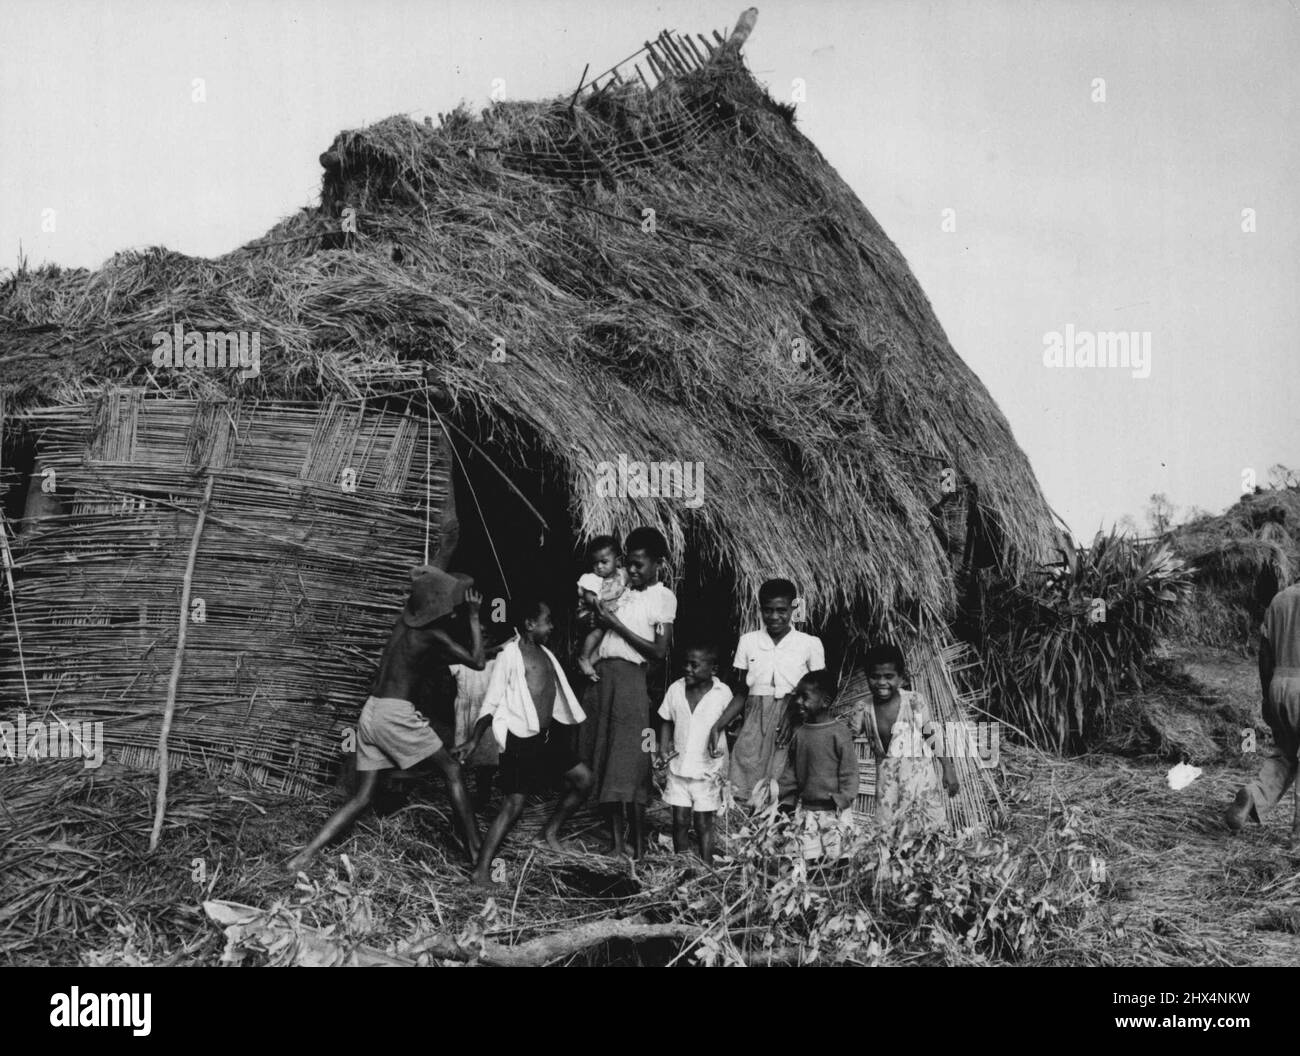 Fidschi Hurrikan -- fröhlich angesichts der Widrigkeiten; eine einheimische Familie, typisch für Tausende, die unter dem Hurrikan gelitten haben, außerhalb ihrer schwer beschädigten Wohnung auf der Hauptinsel Fidschi, Viti Levu. 3. Februar 1952. (Foto von New Zealand Herald Photo). Stockfoto